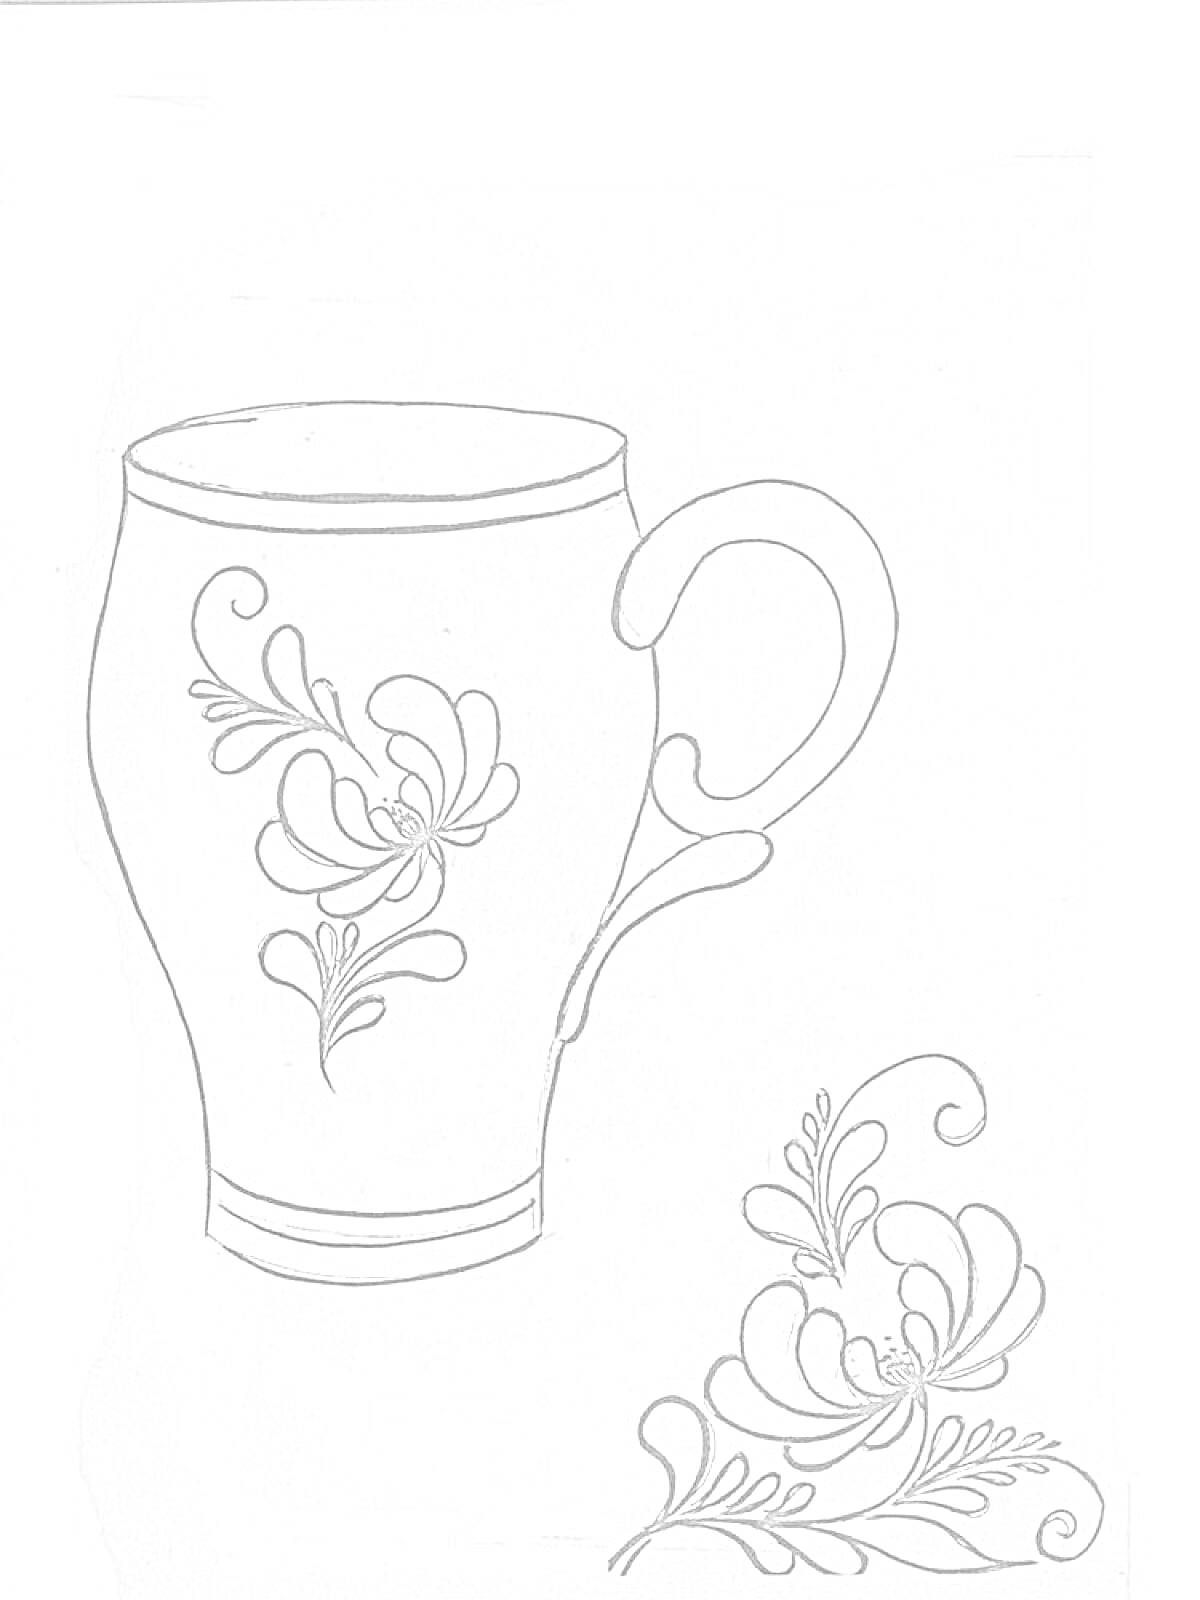 Раскраска Чашка с цветочным орнаментом в стиле Гжель, отдельно цветочный узор